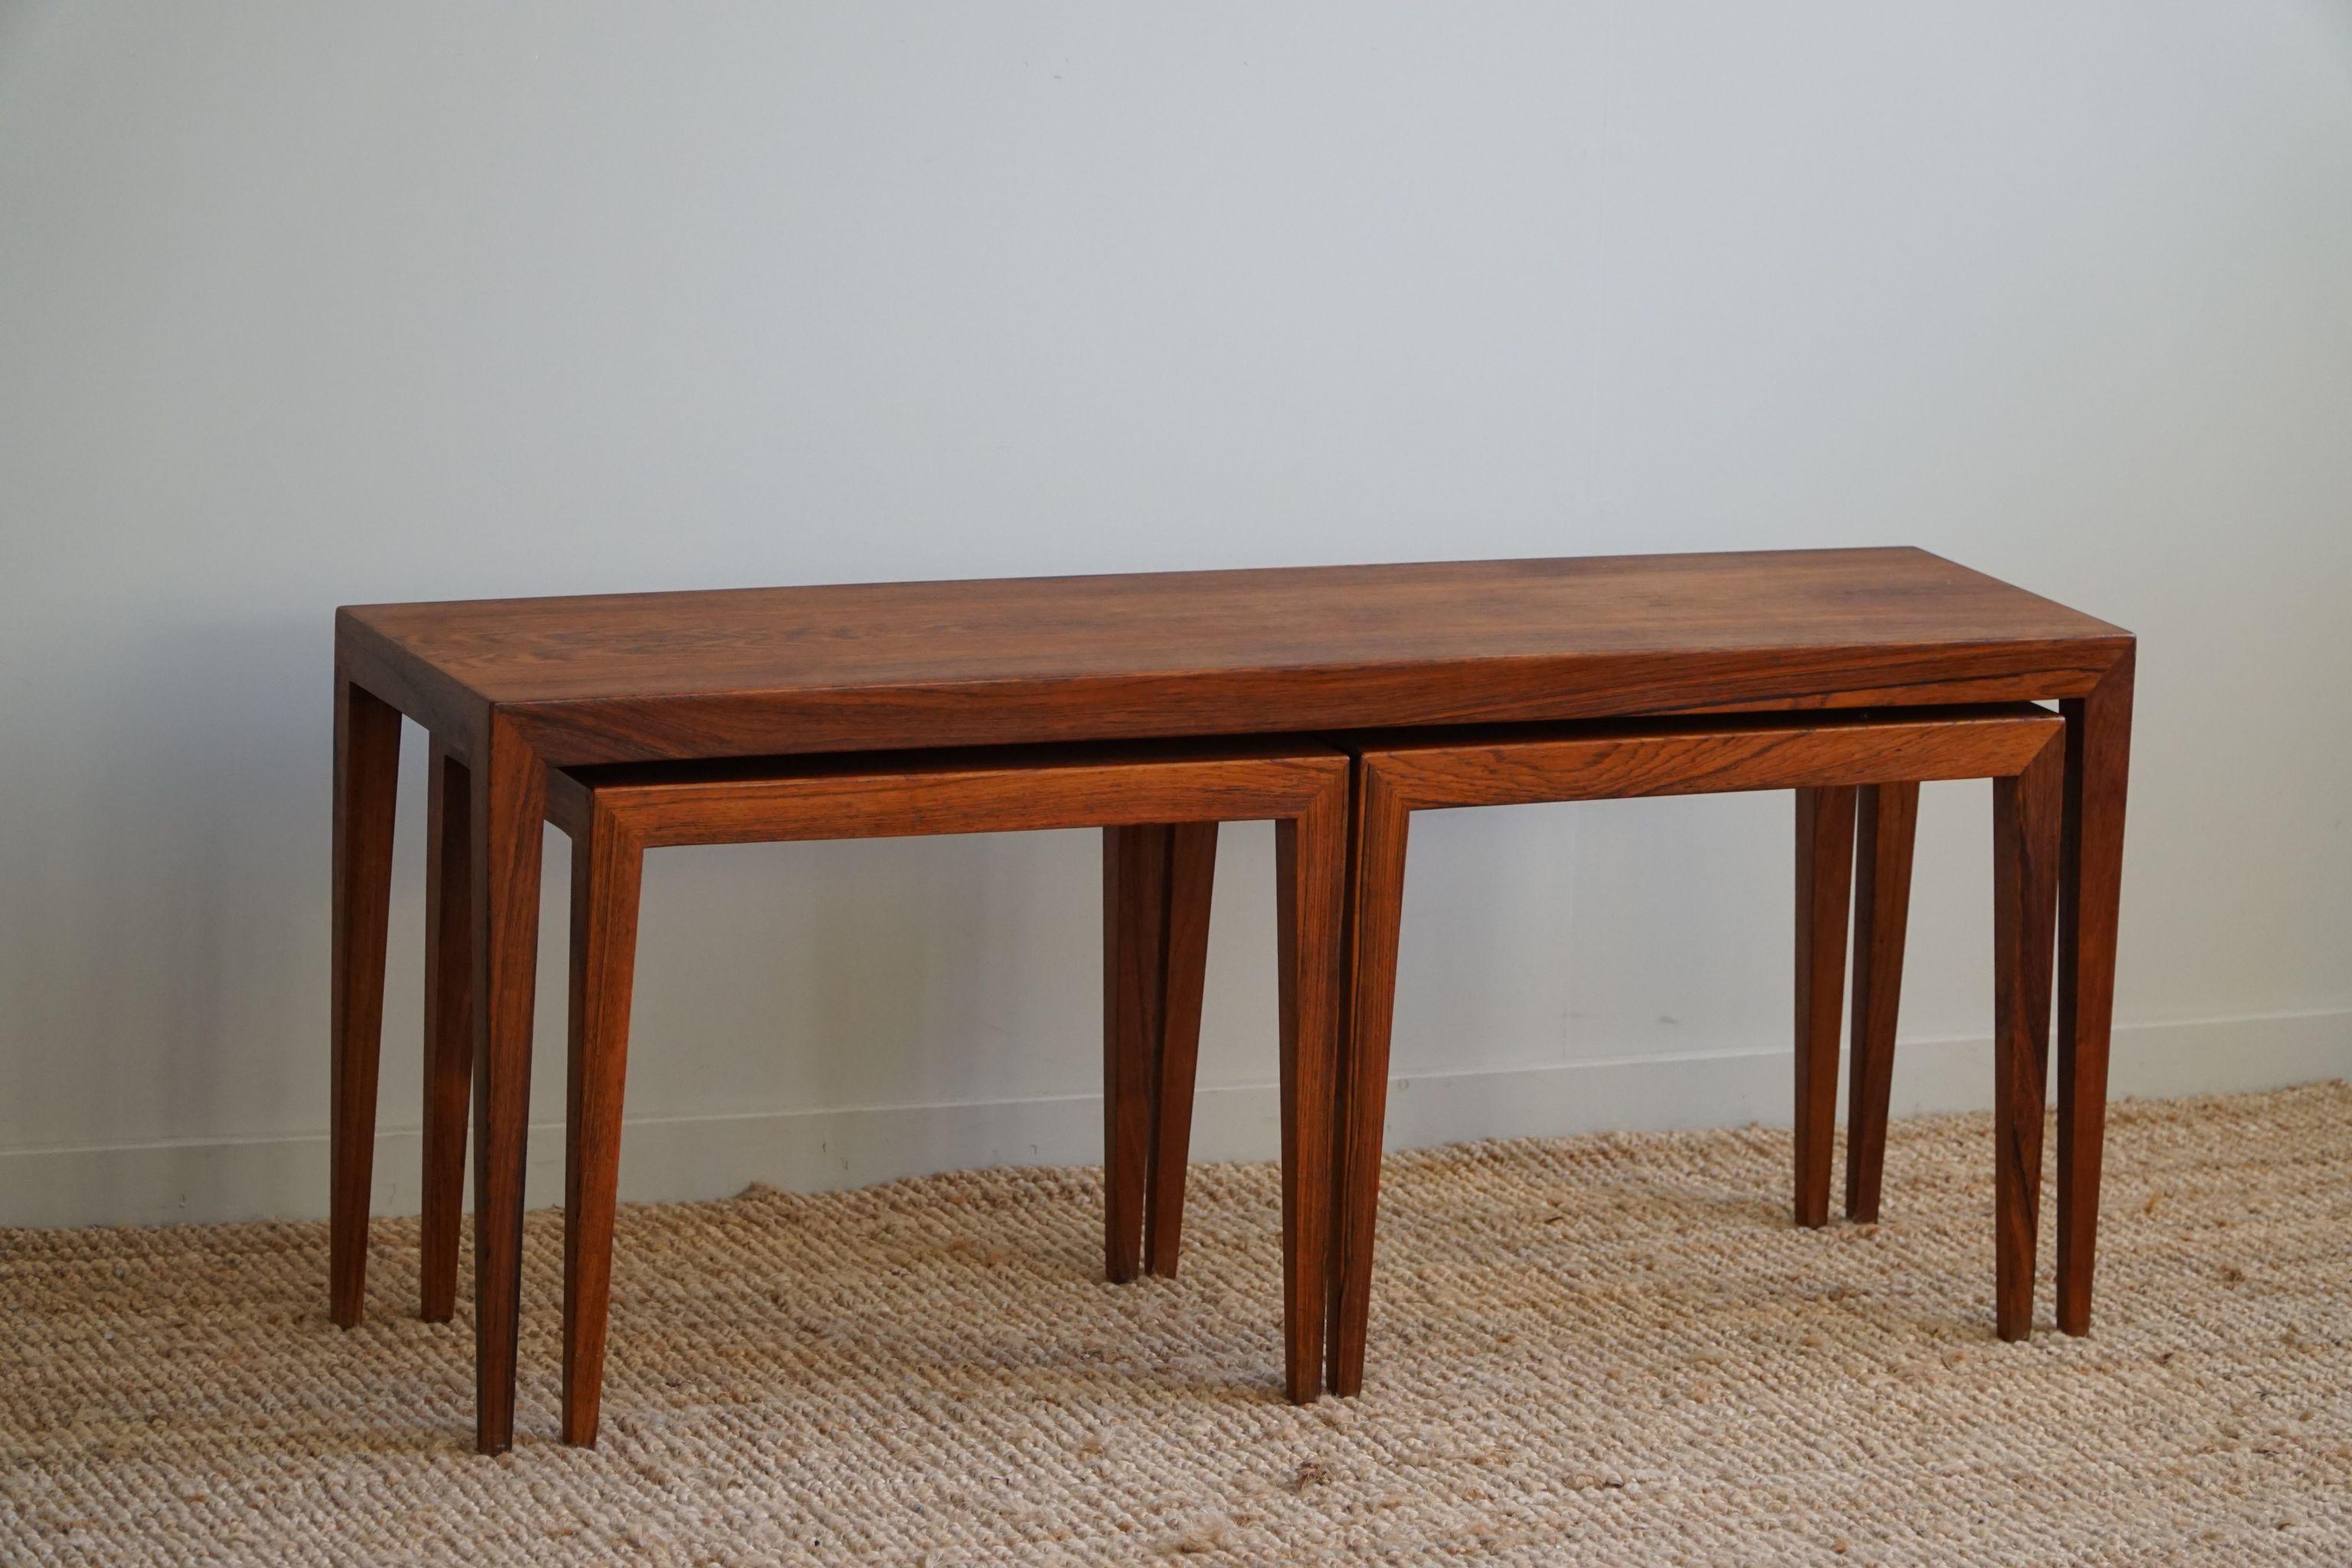 3 Tische aus brasilianischem Palisanderholz, entworfen vom dänischen Designer Severin Hansen JR für Haslev. Die Tische sind restauriert und daher in einem sehr guten Zustand. 

Diese schönen Tische passen zu vielen Einrichtungsstilen. Ein modernes,